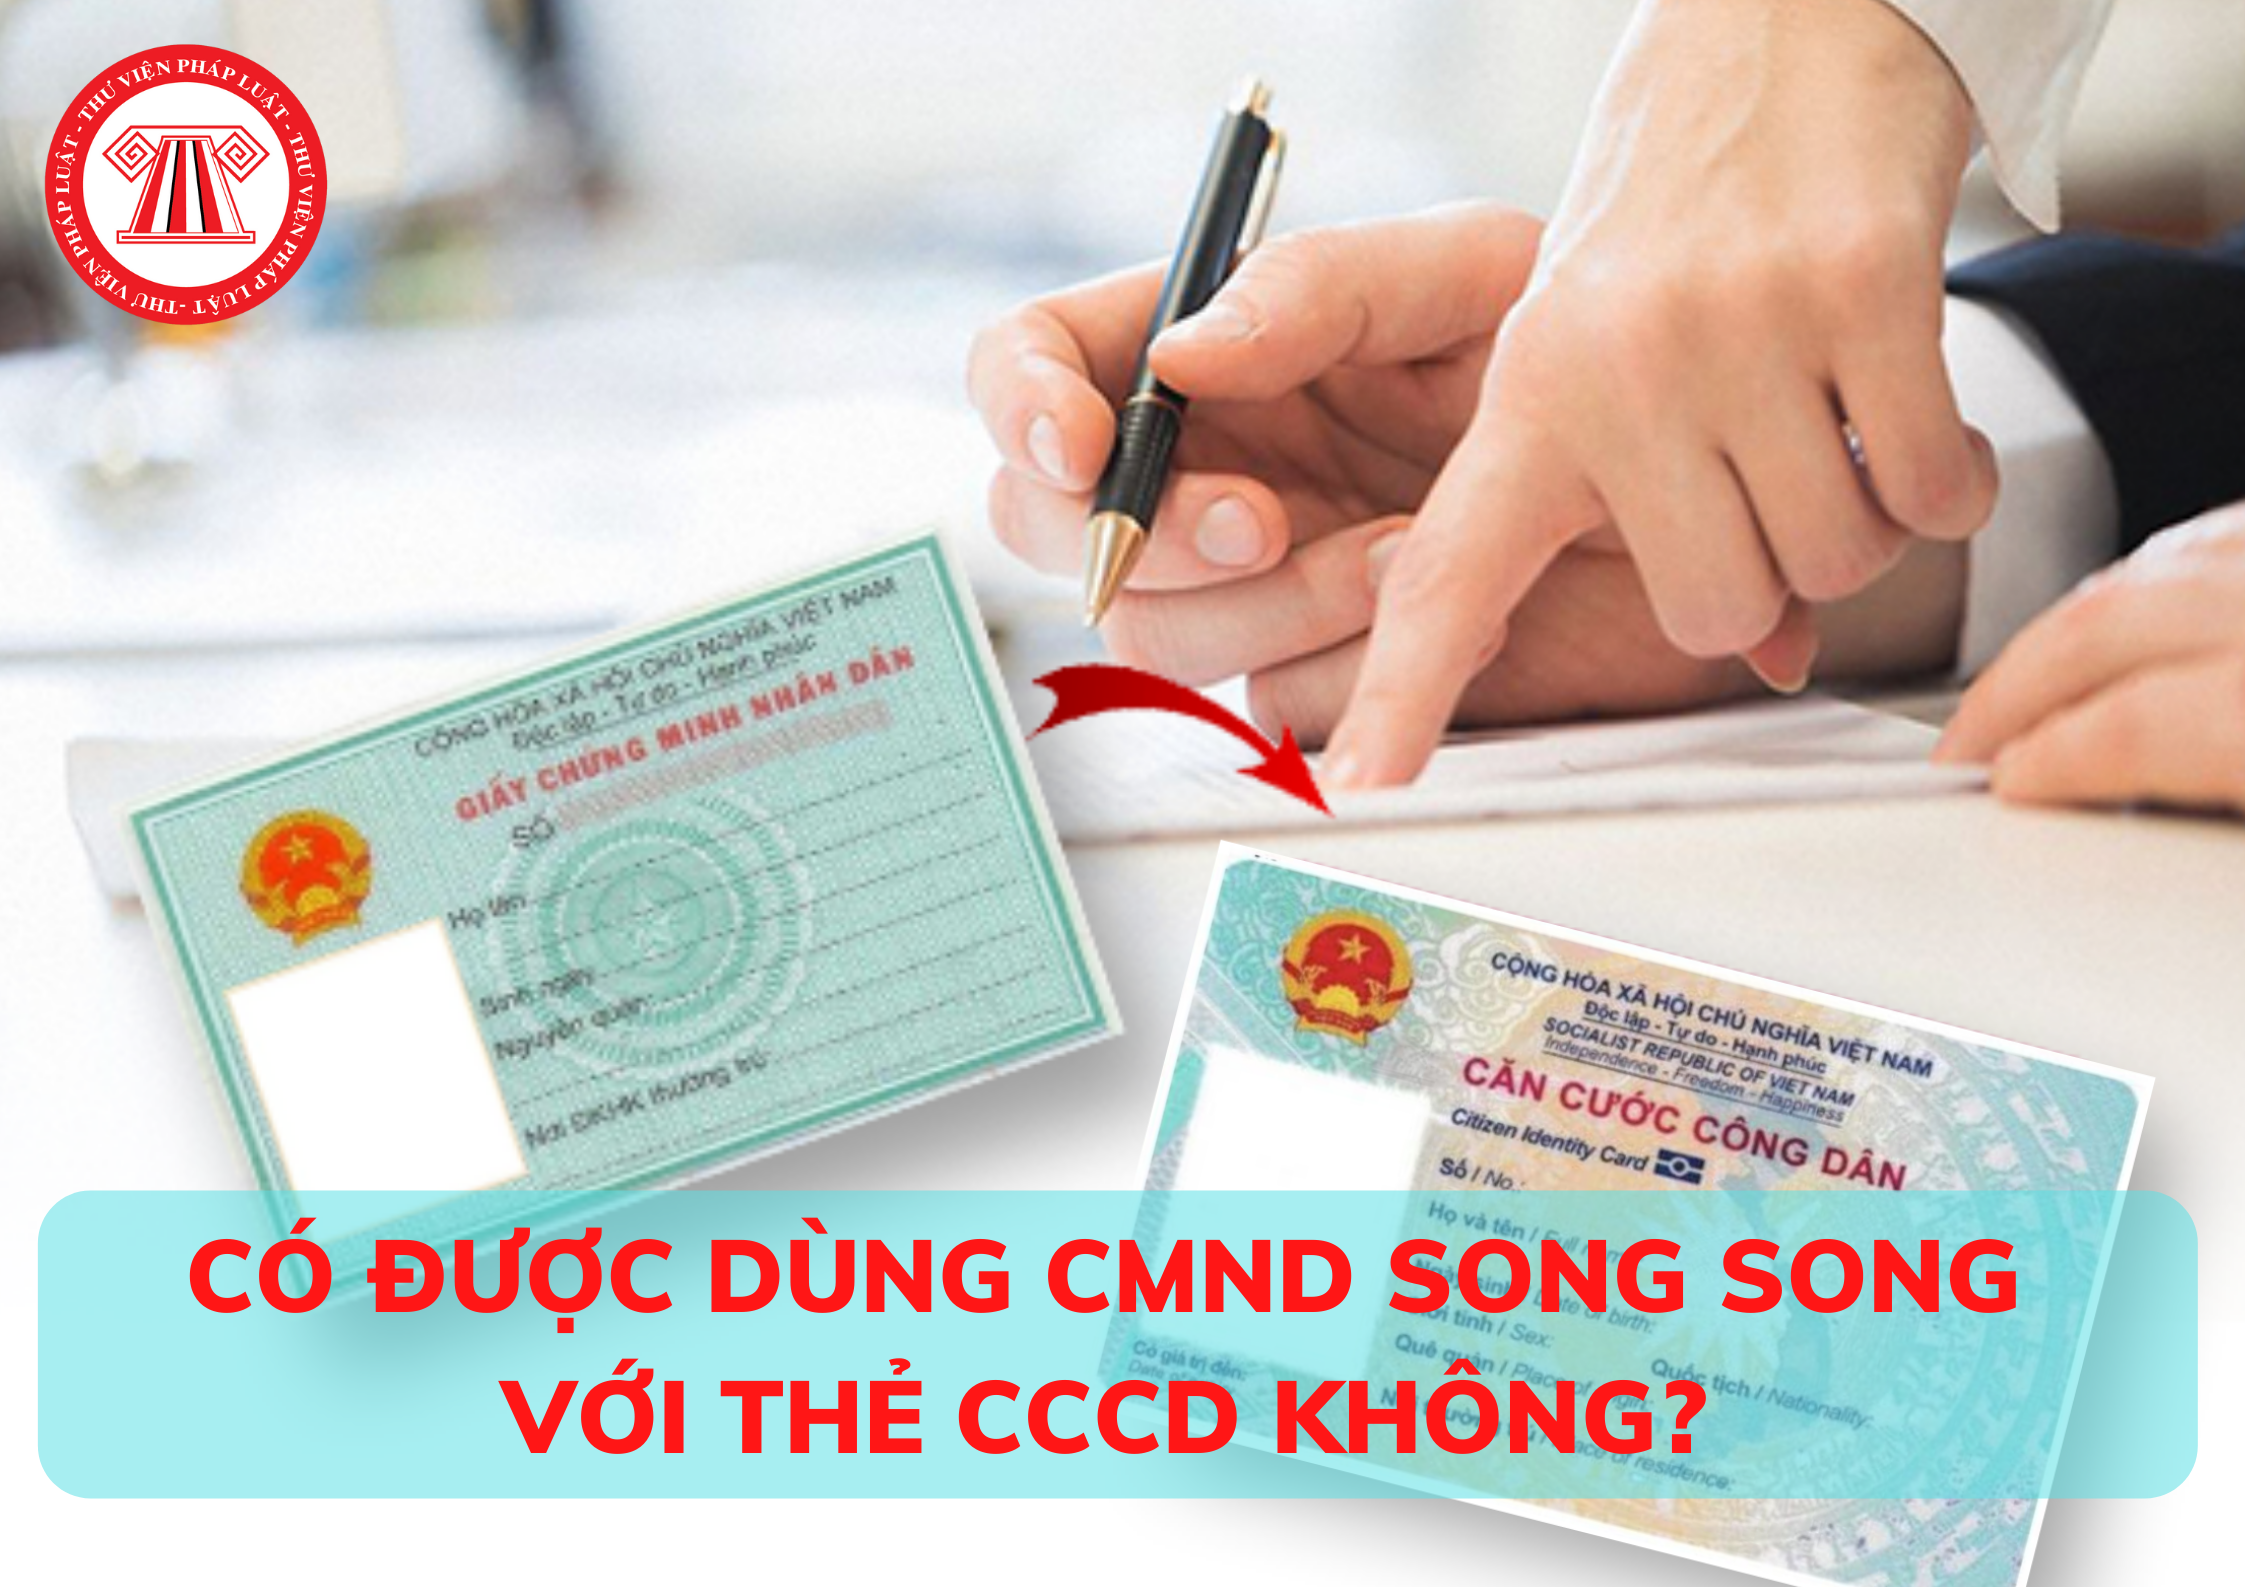 Có được dùng CMND song song với thẻ CCCD không?